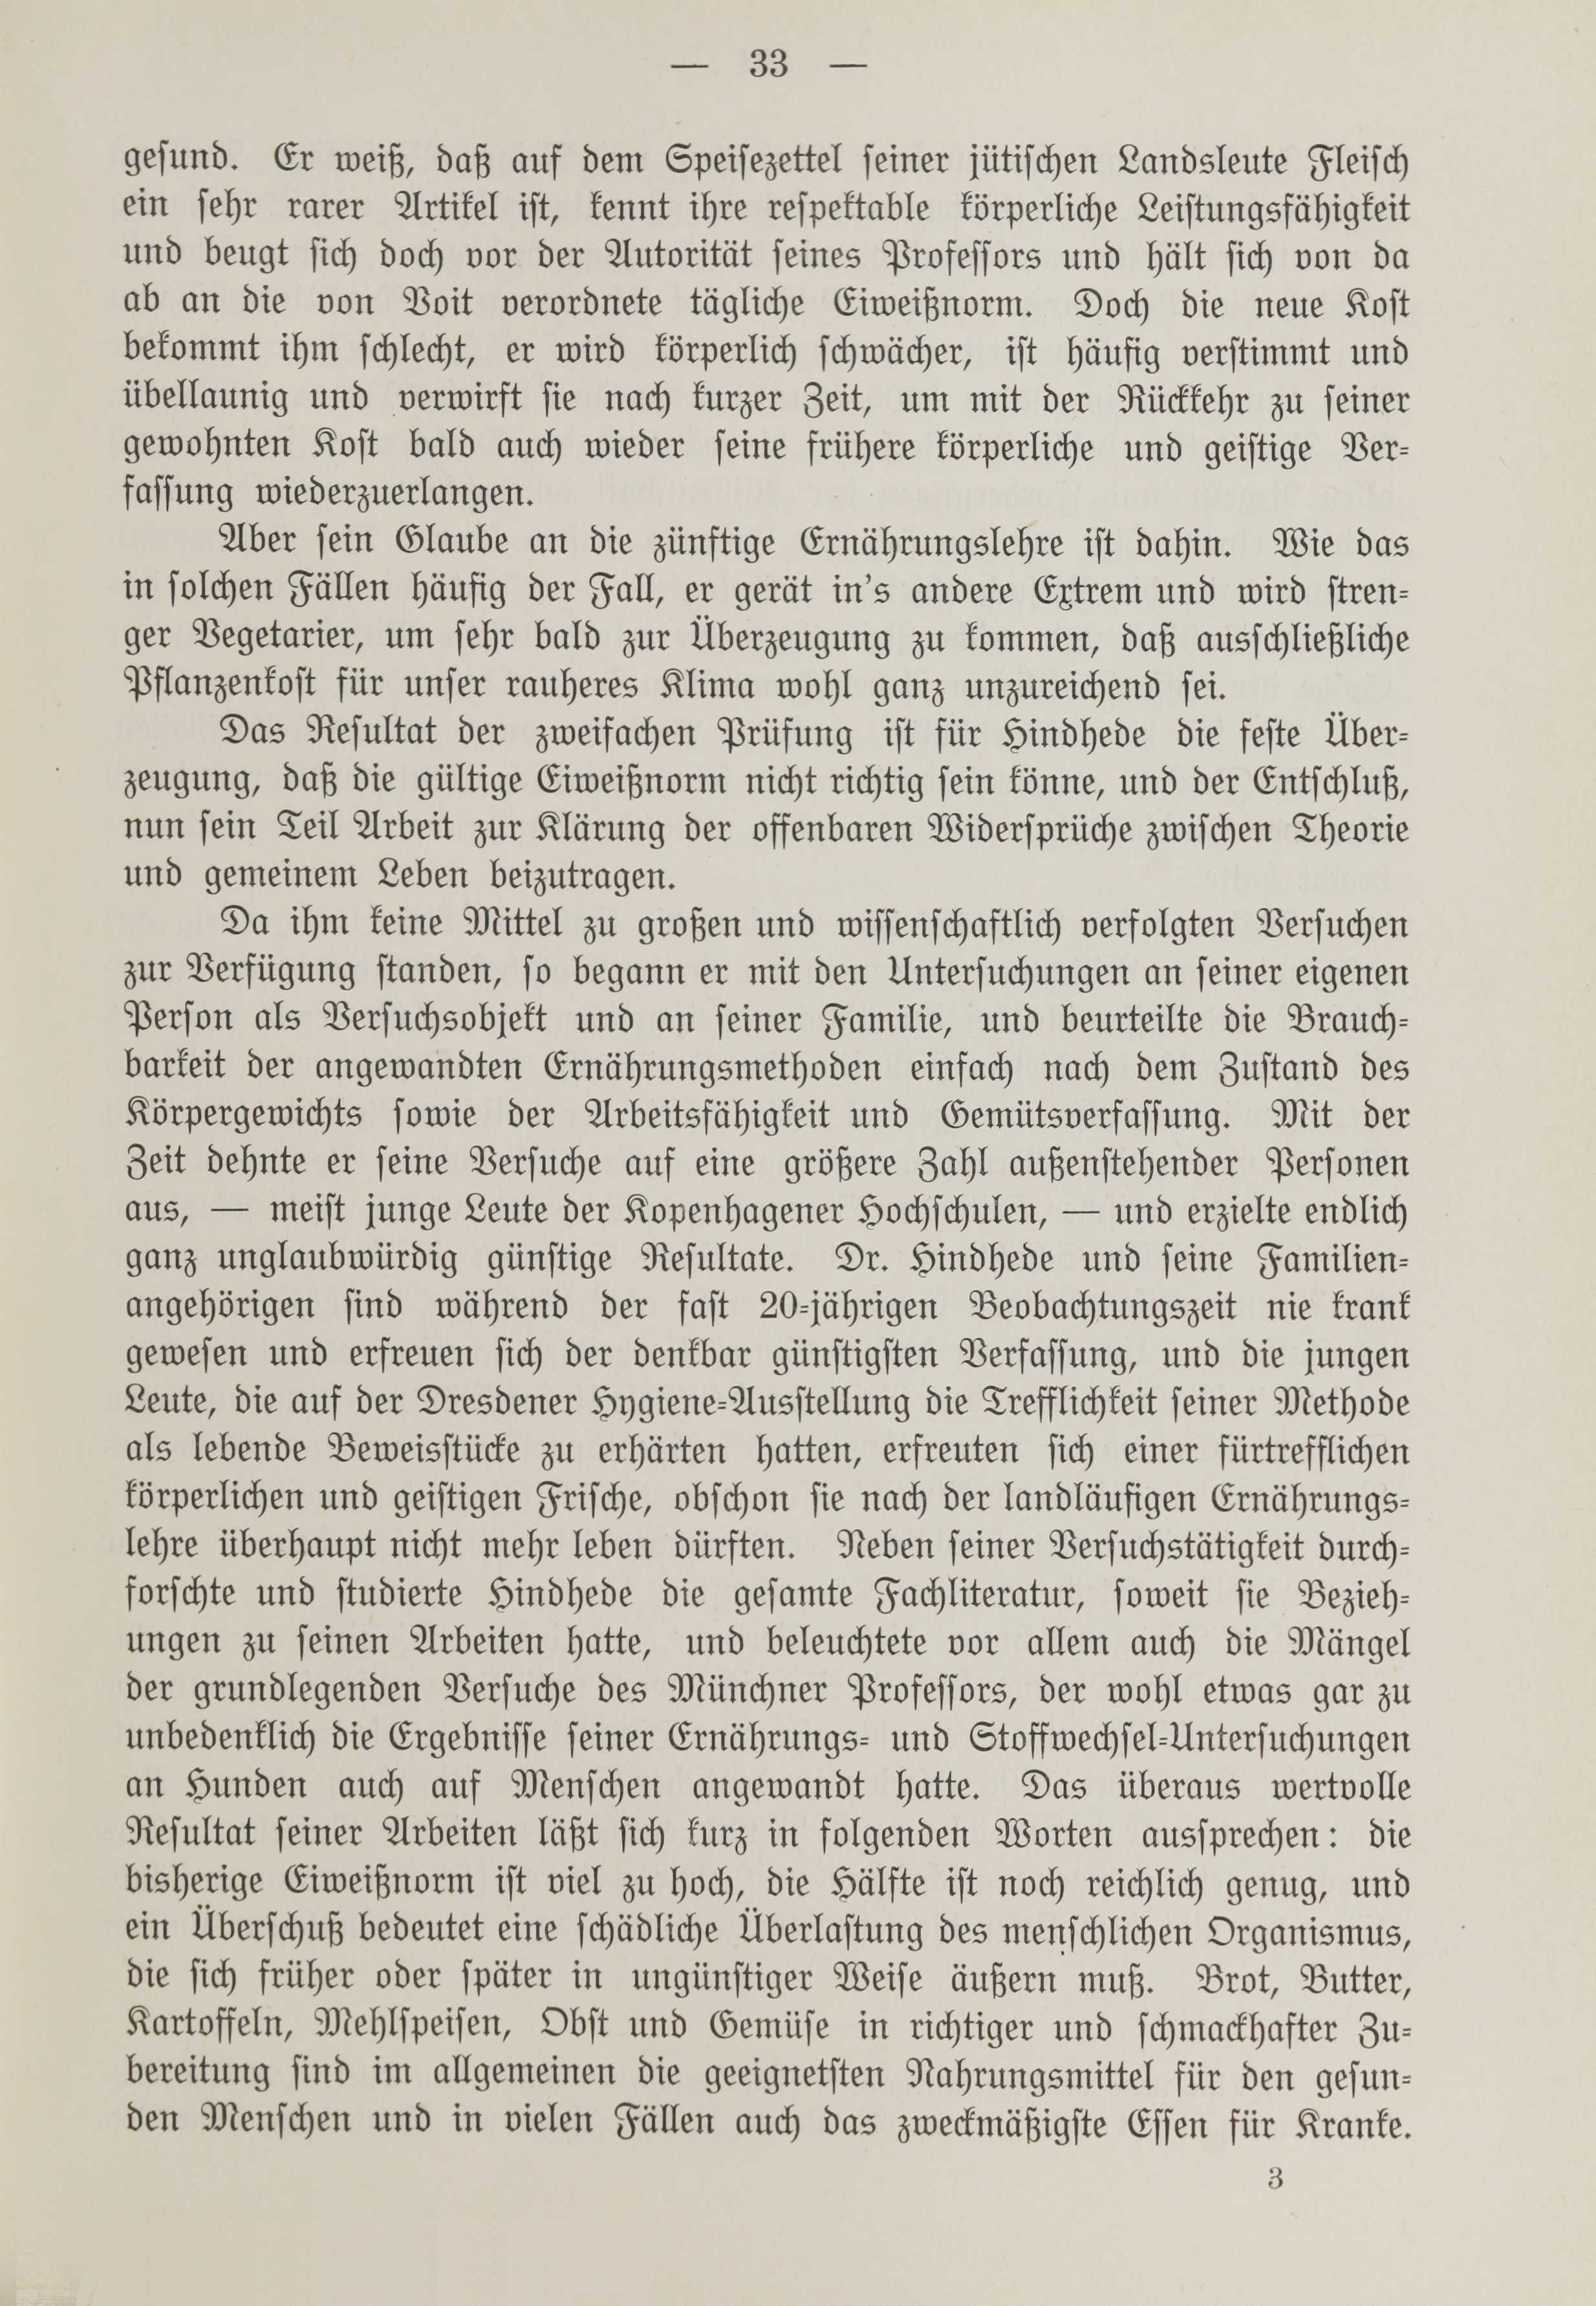 Deutsche Monatsschrift für Russland [1] (1912) | 40. (33) Main body of text